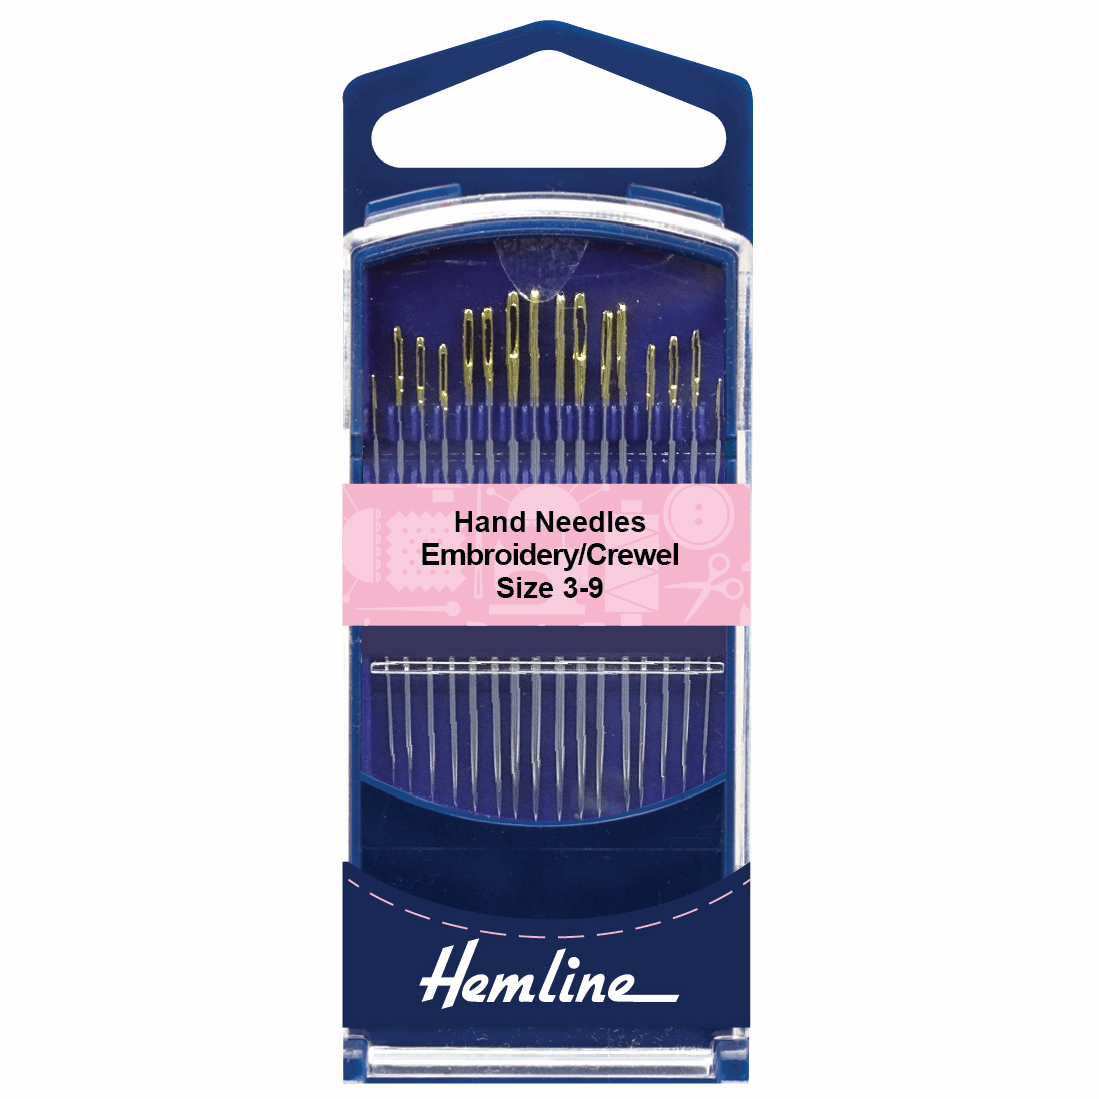 Embroidery / Crewel Needles - Size 3-9 - Hemline Premium (H280G.39)